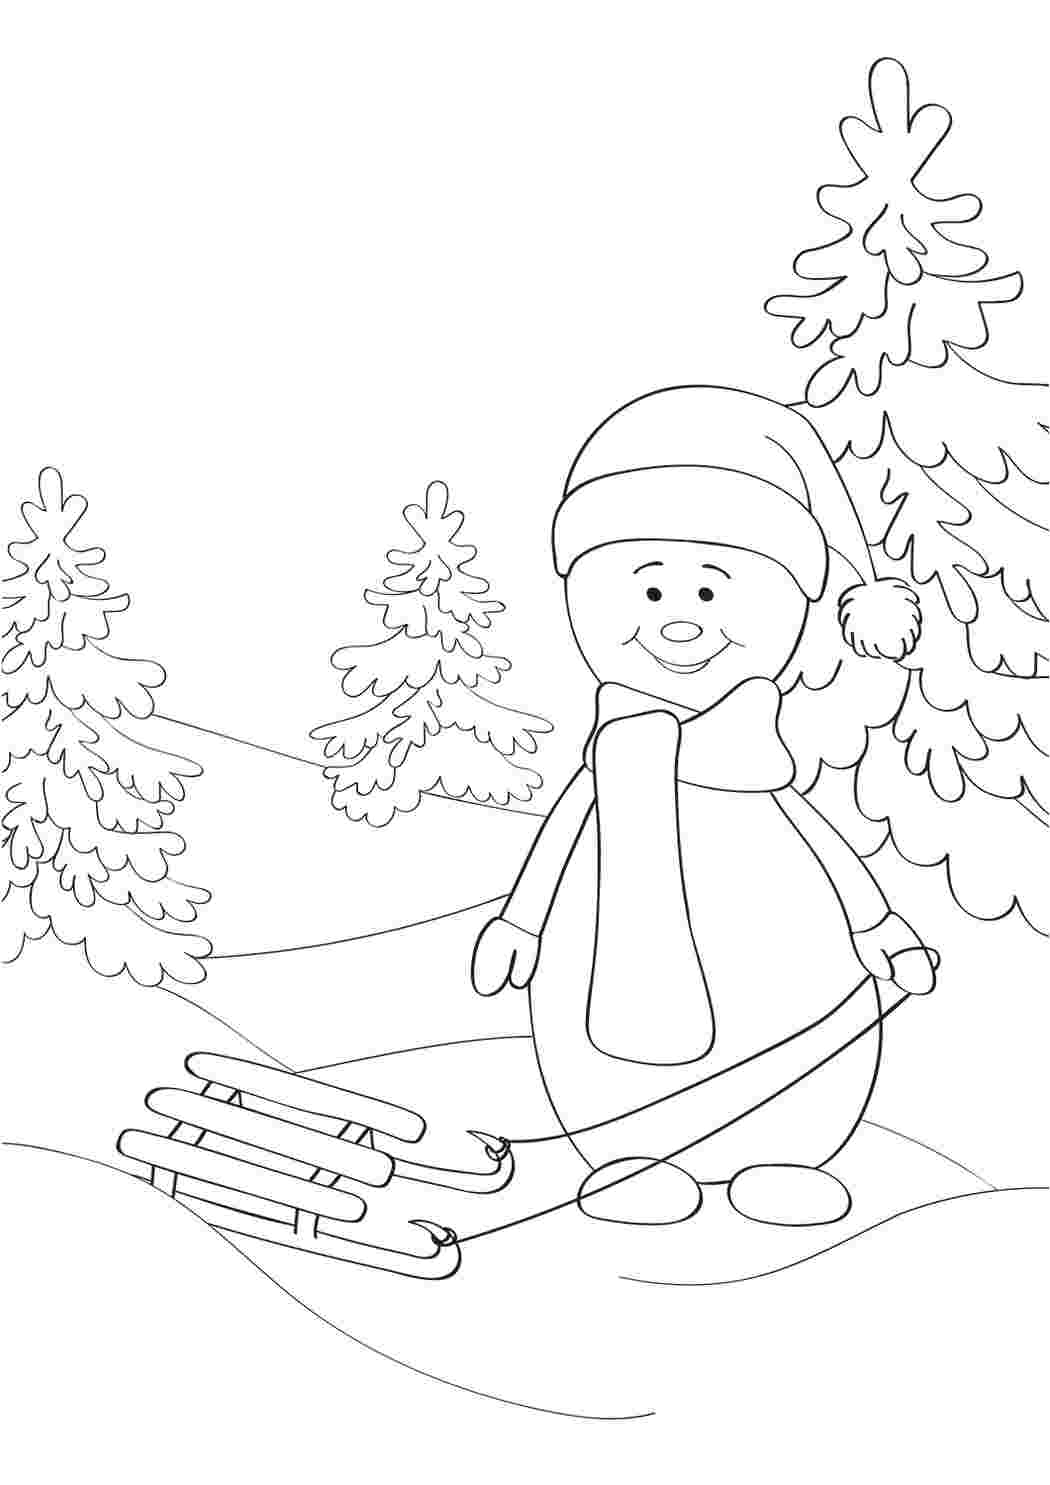 Раскраски Снеговик на санках и лыжах